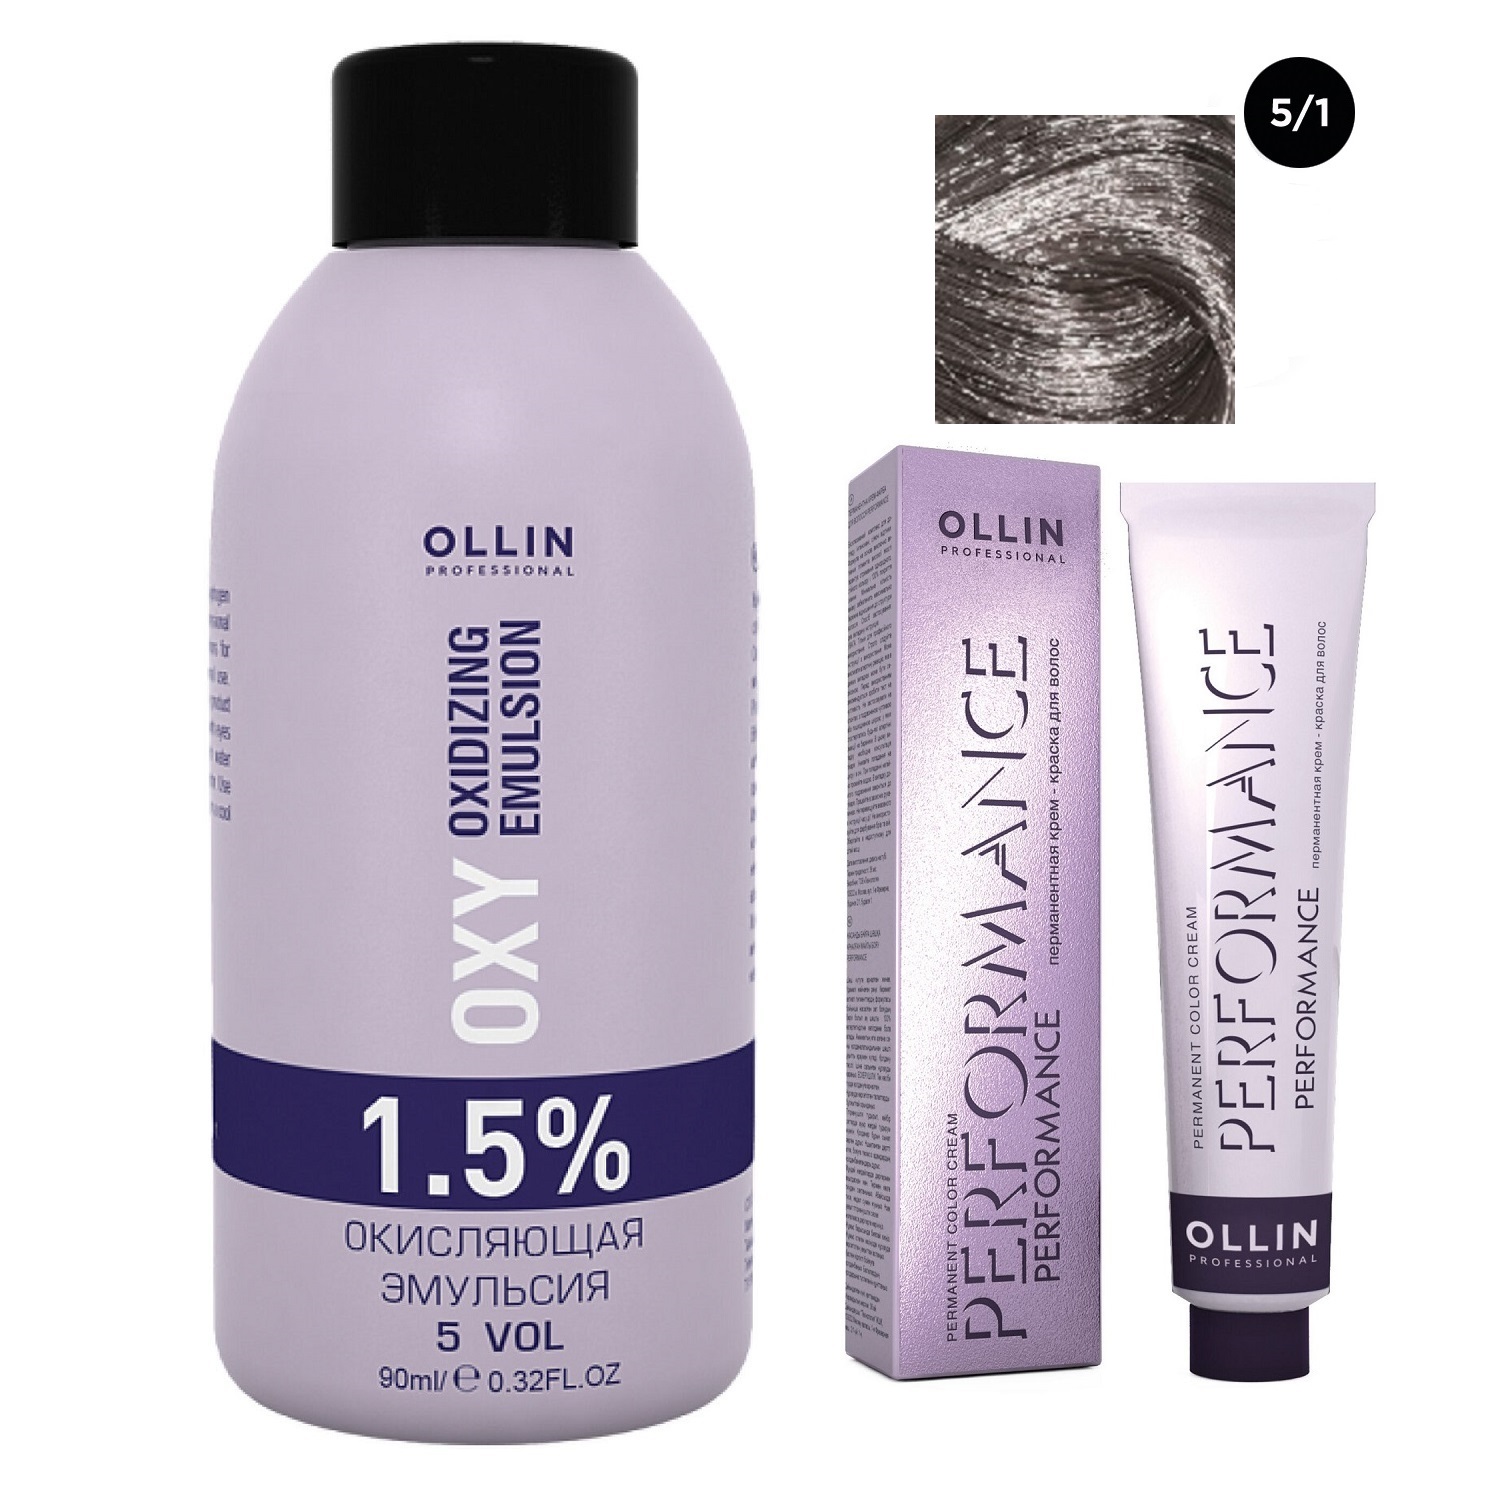 Ollin Professional Набор Перманентная крем-краска для волос Ollin Performance оттенок 5/1 светлый шатен пепельный 60 мл + Окисляющая эмульсия Oxy 1,5% 90 мл (Ollin Professional, Performance) окисляющая эмульсия 1 5% ollin professional performance oxy 90 мл